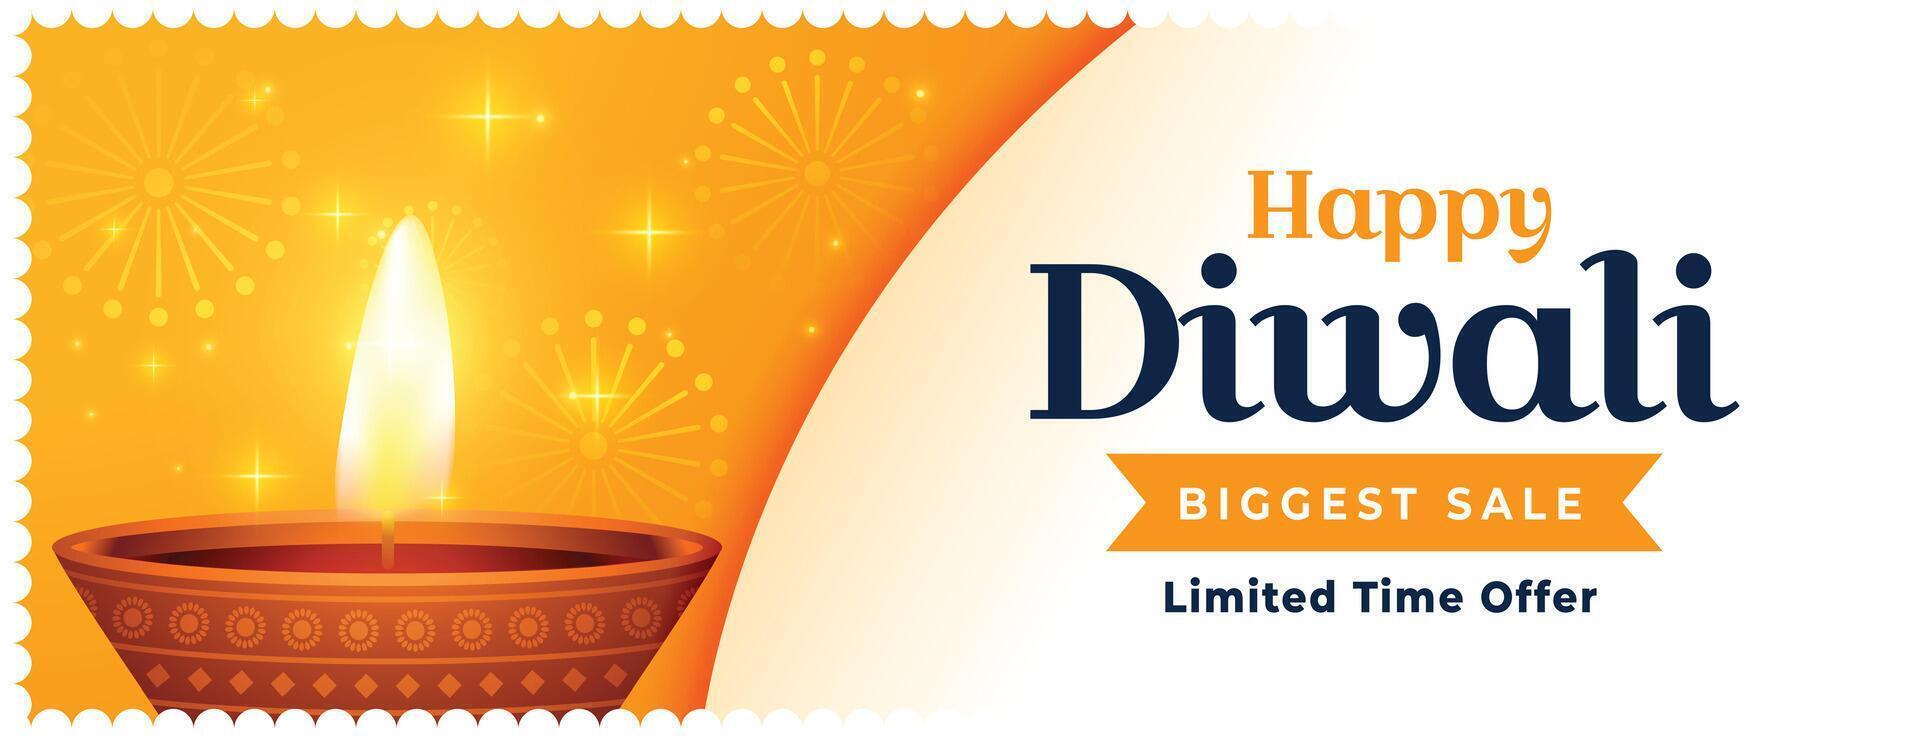 största försäljning och erbjudande baner för festival av lampor diwali vektor